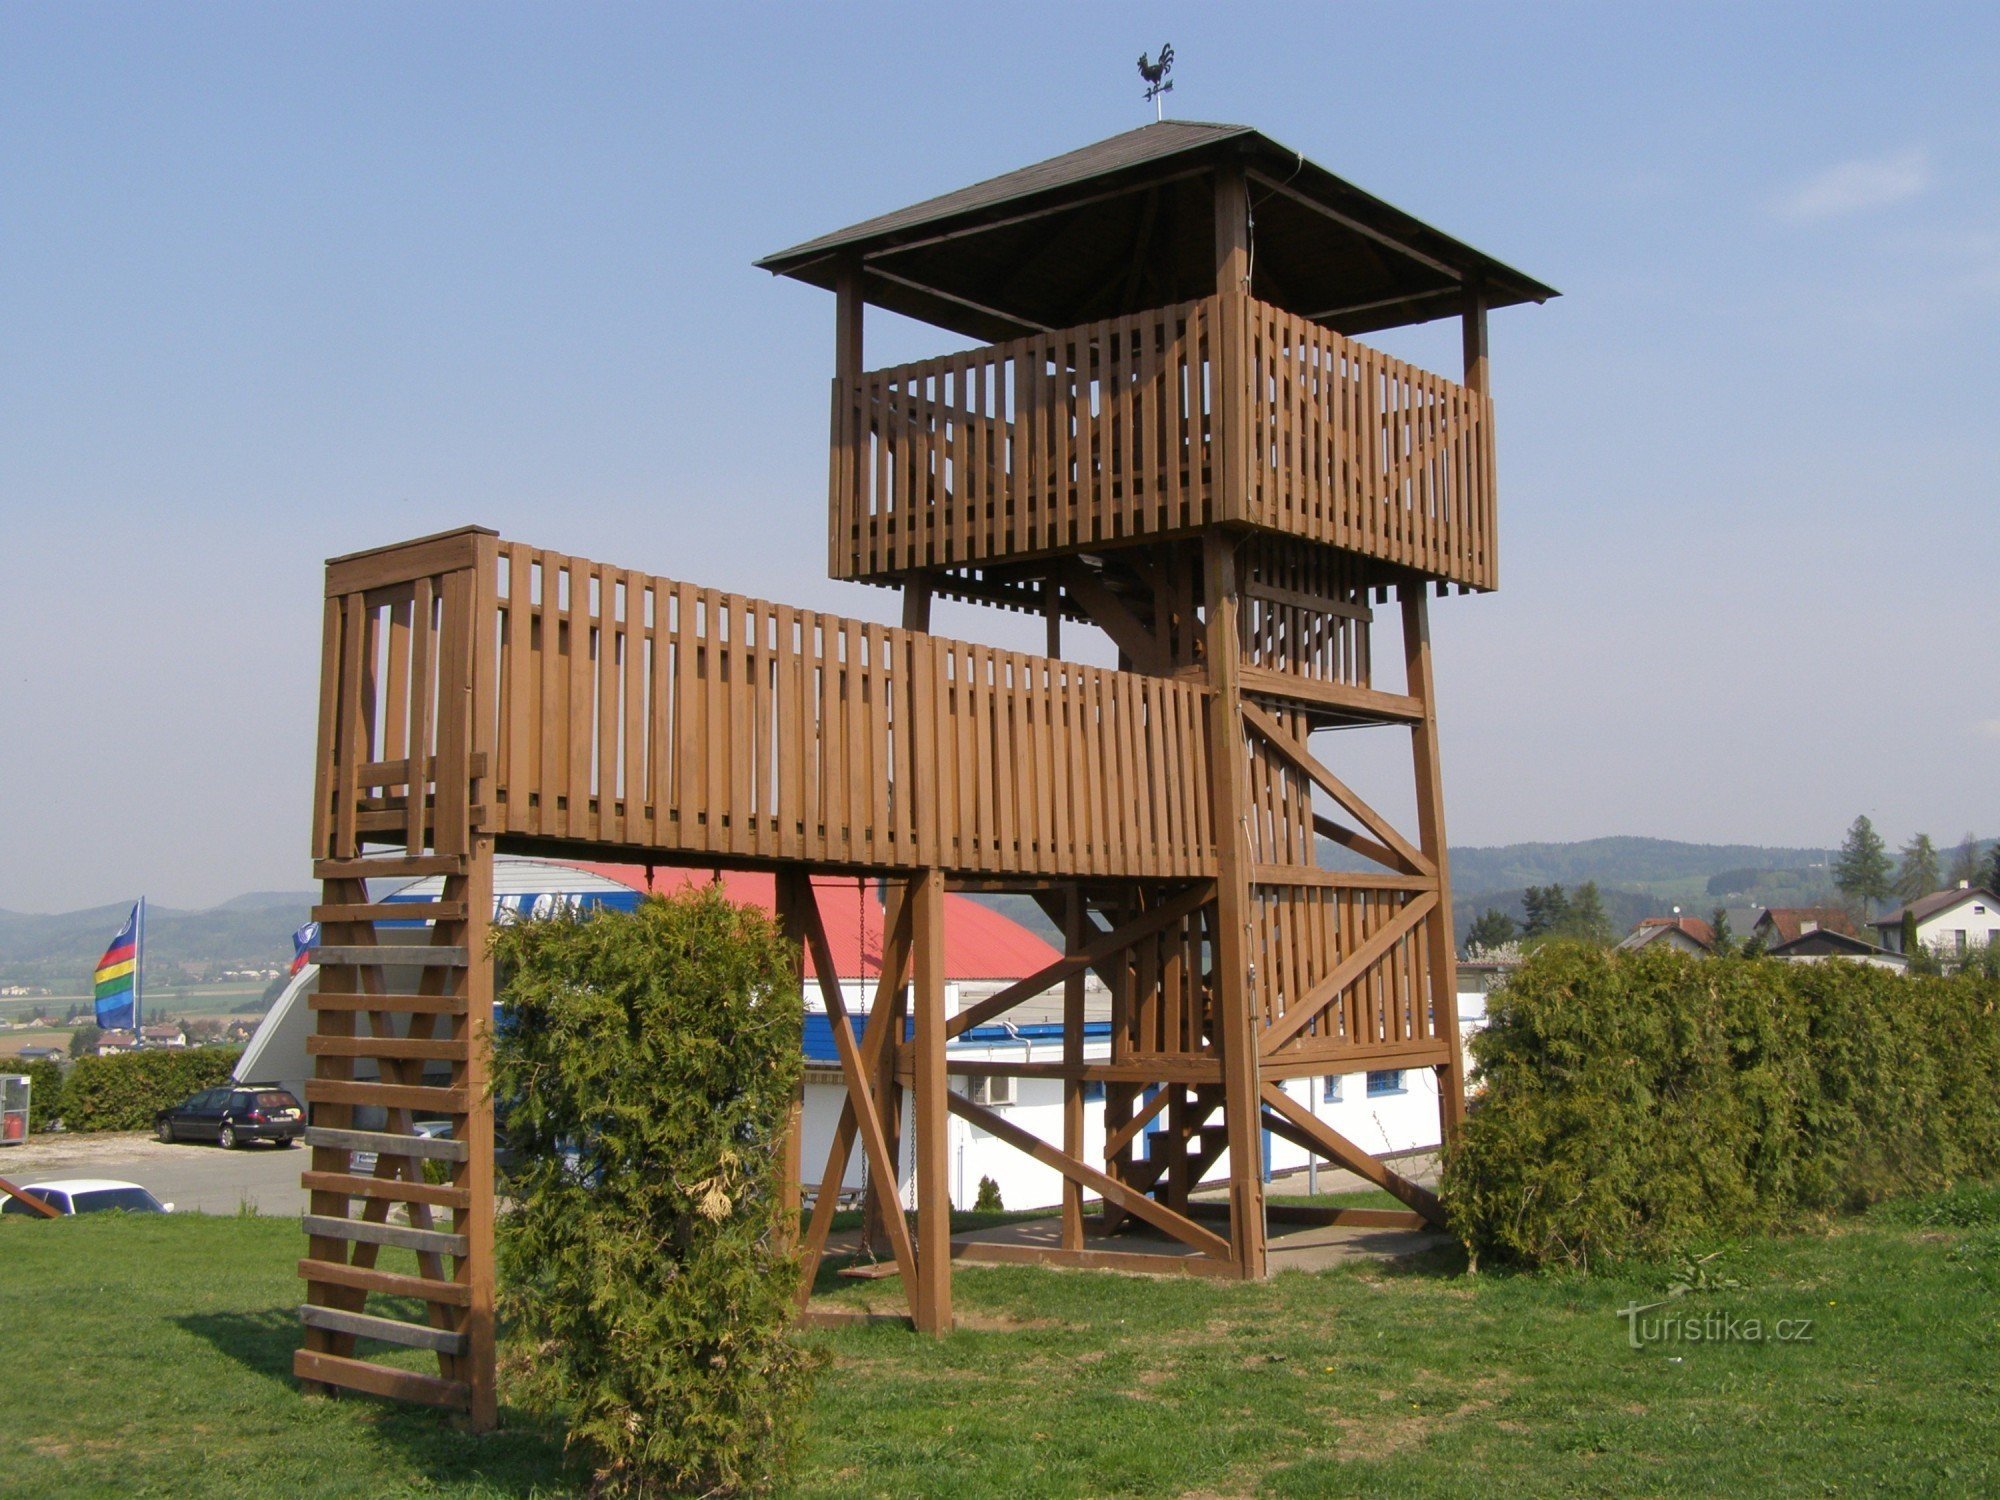 wooden lookout tower near Rtyn in Podkrkonoší